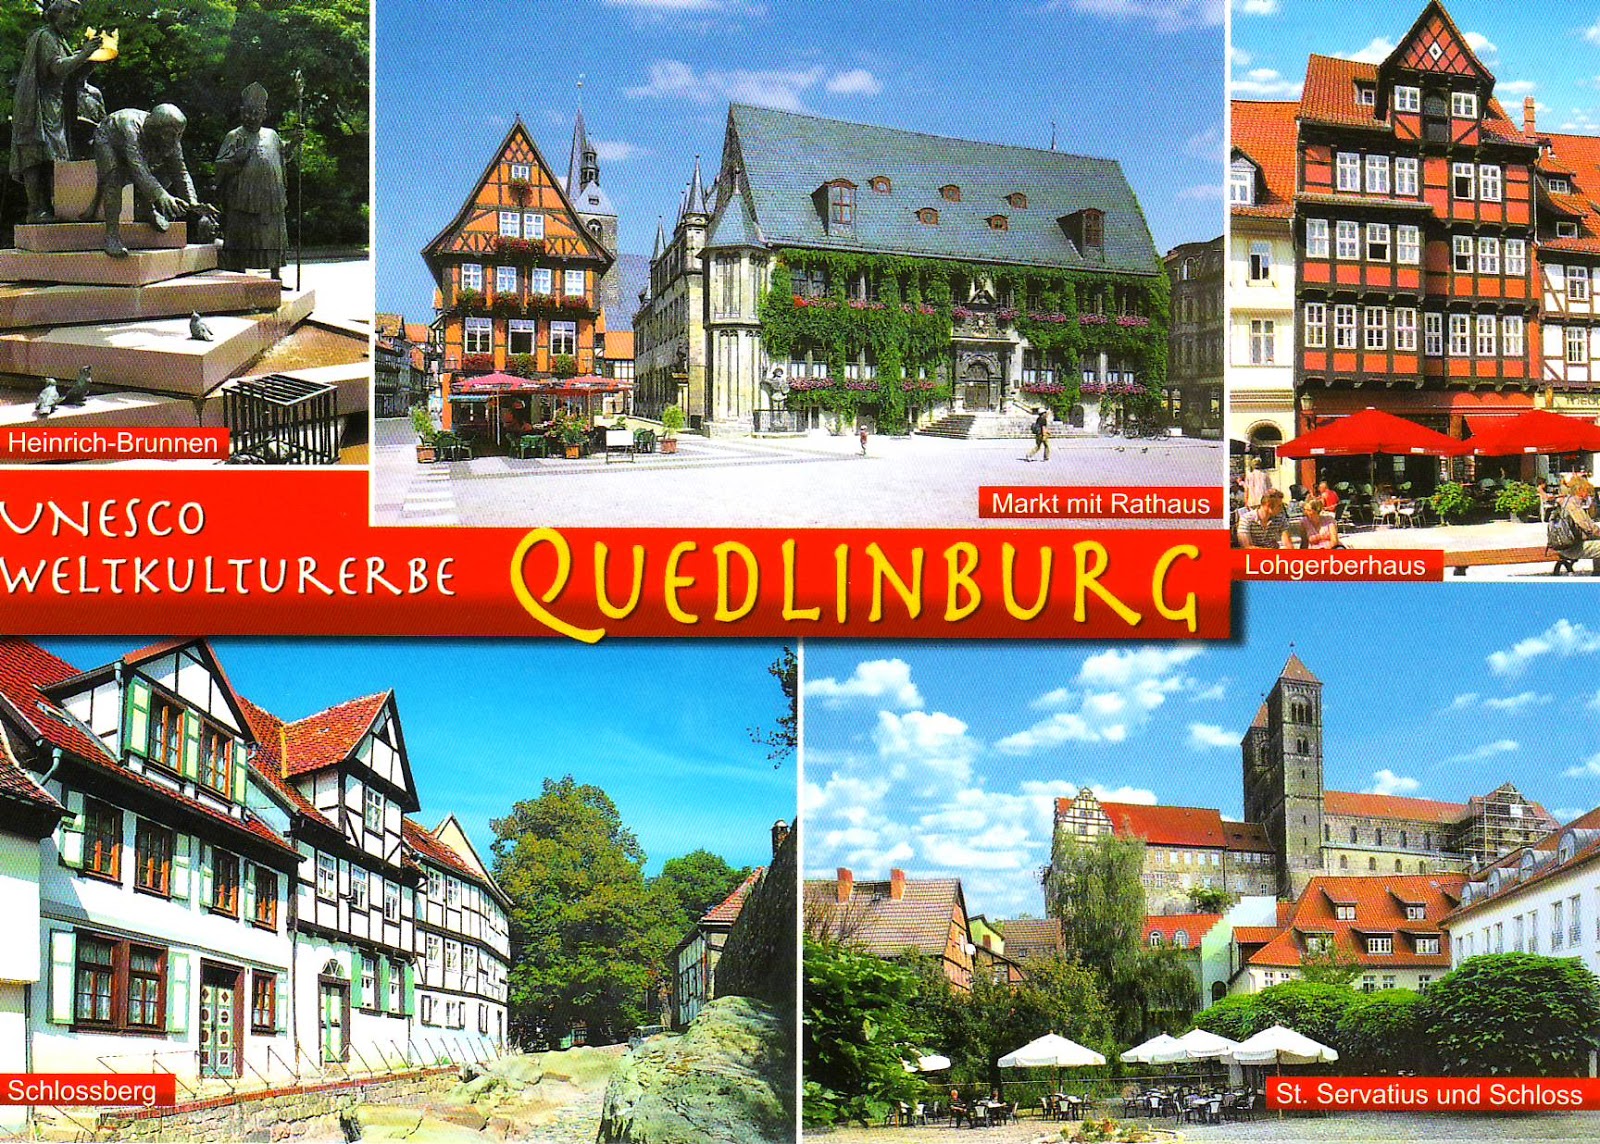 Quedlinburg single